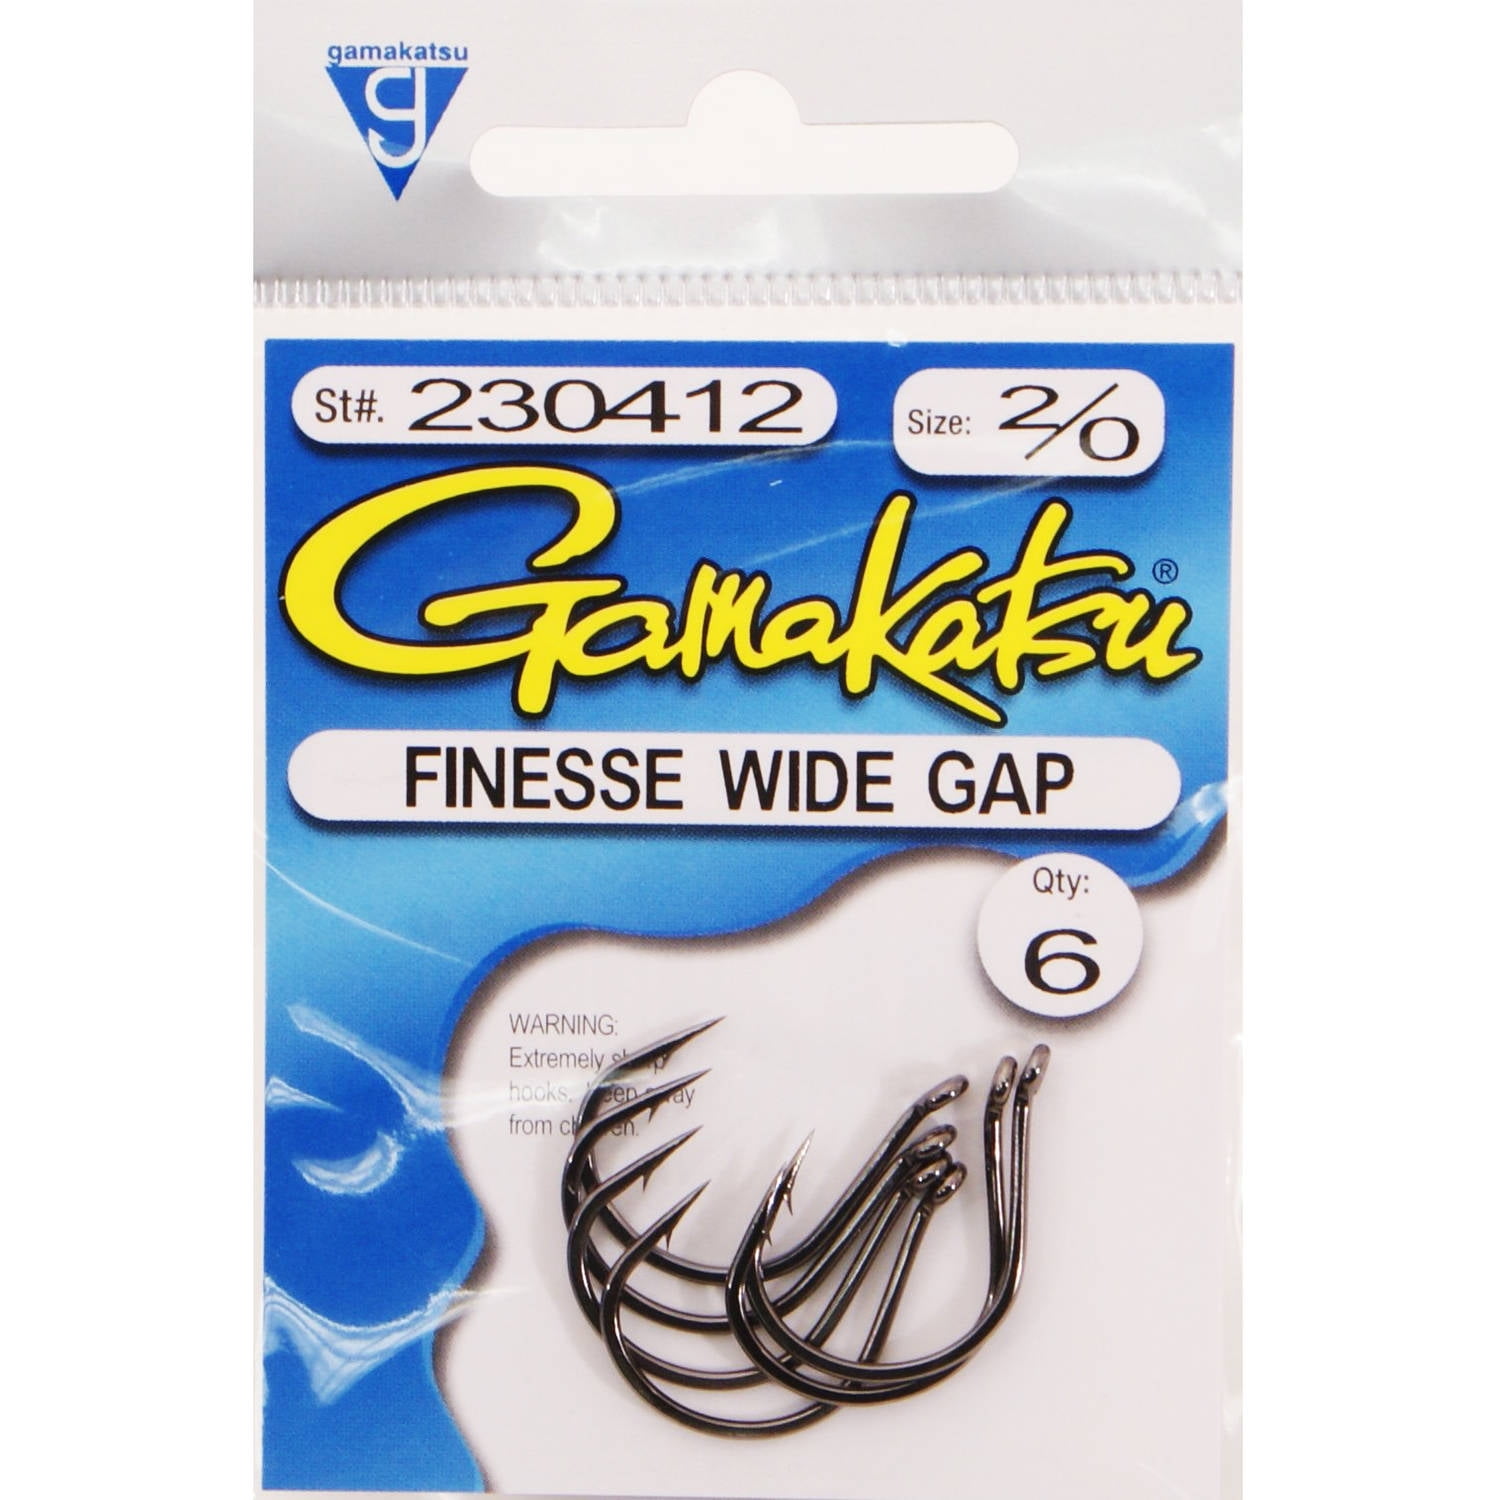 gamakatsu finesse wide gap hook hooks 4/0 # 230314 red bass senko worm hook 